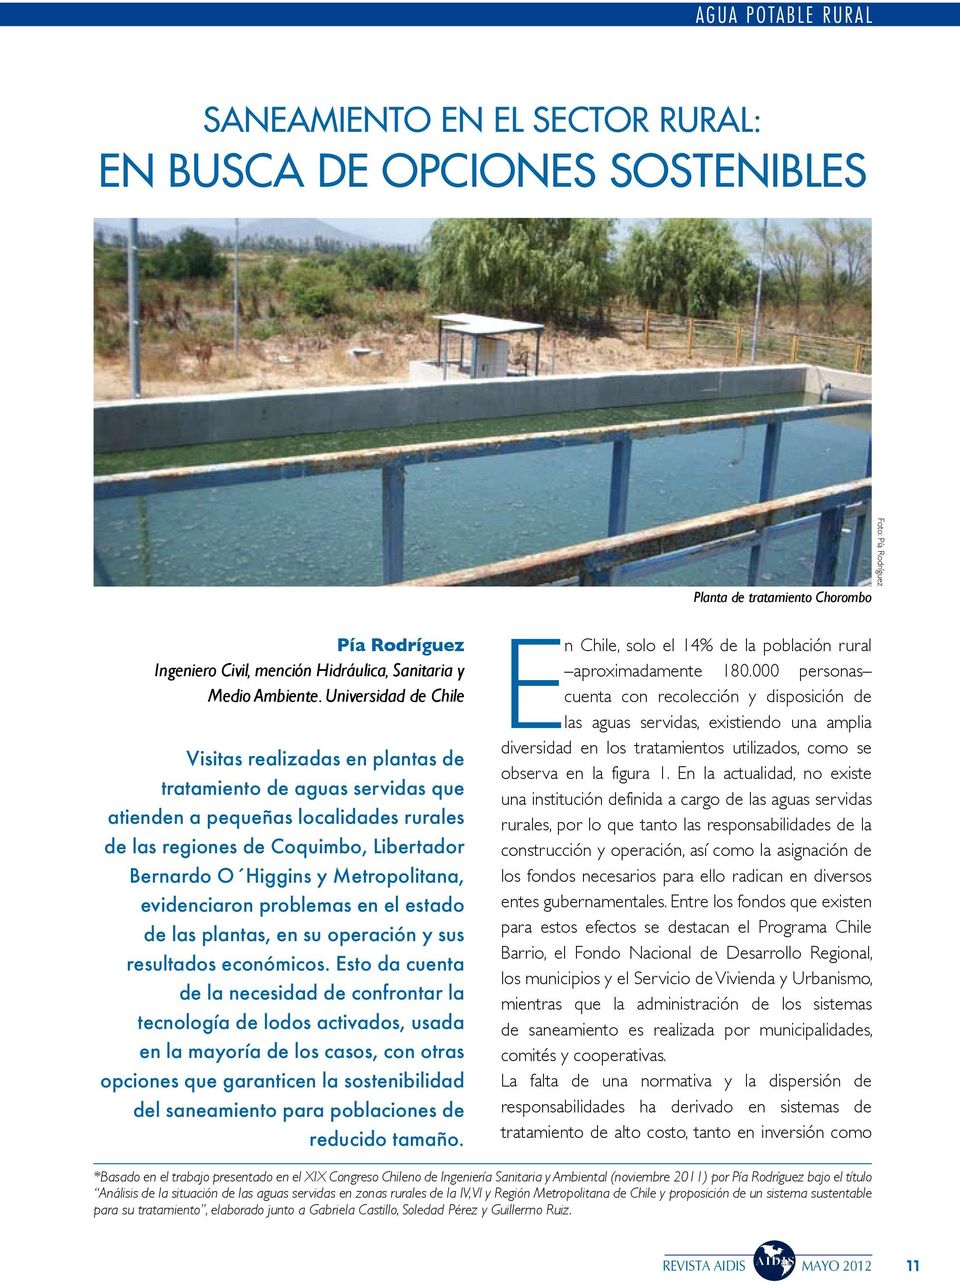 Universidad de Chile Visitas realizadas en plantas de tratamiento de aguas servidas que atienden a pequeñas localidades rurales de las regiones de Coquimbo, Libertador Bernardo O Higgins y